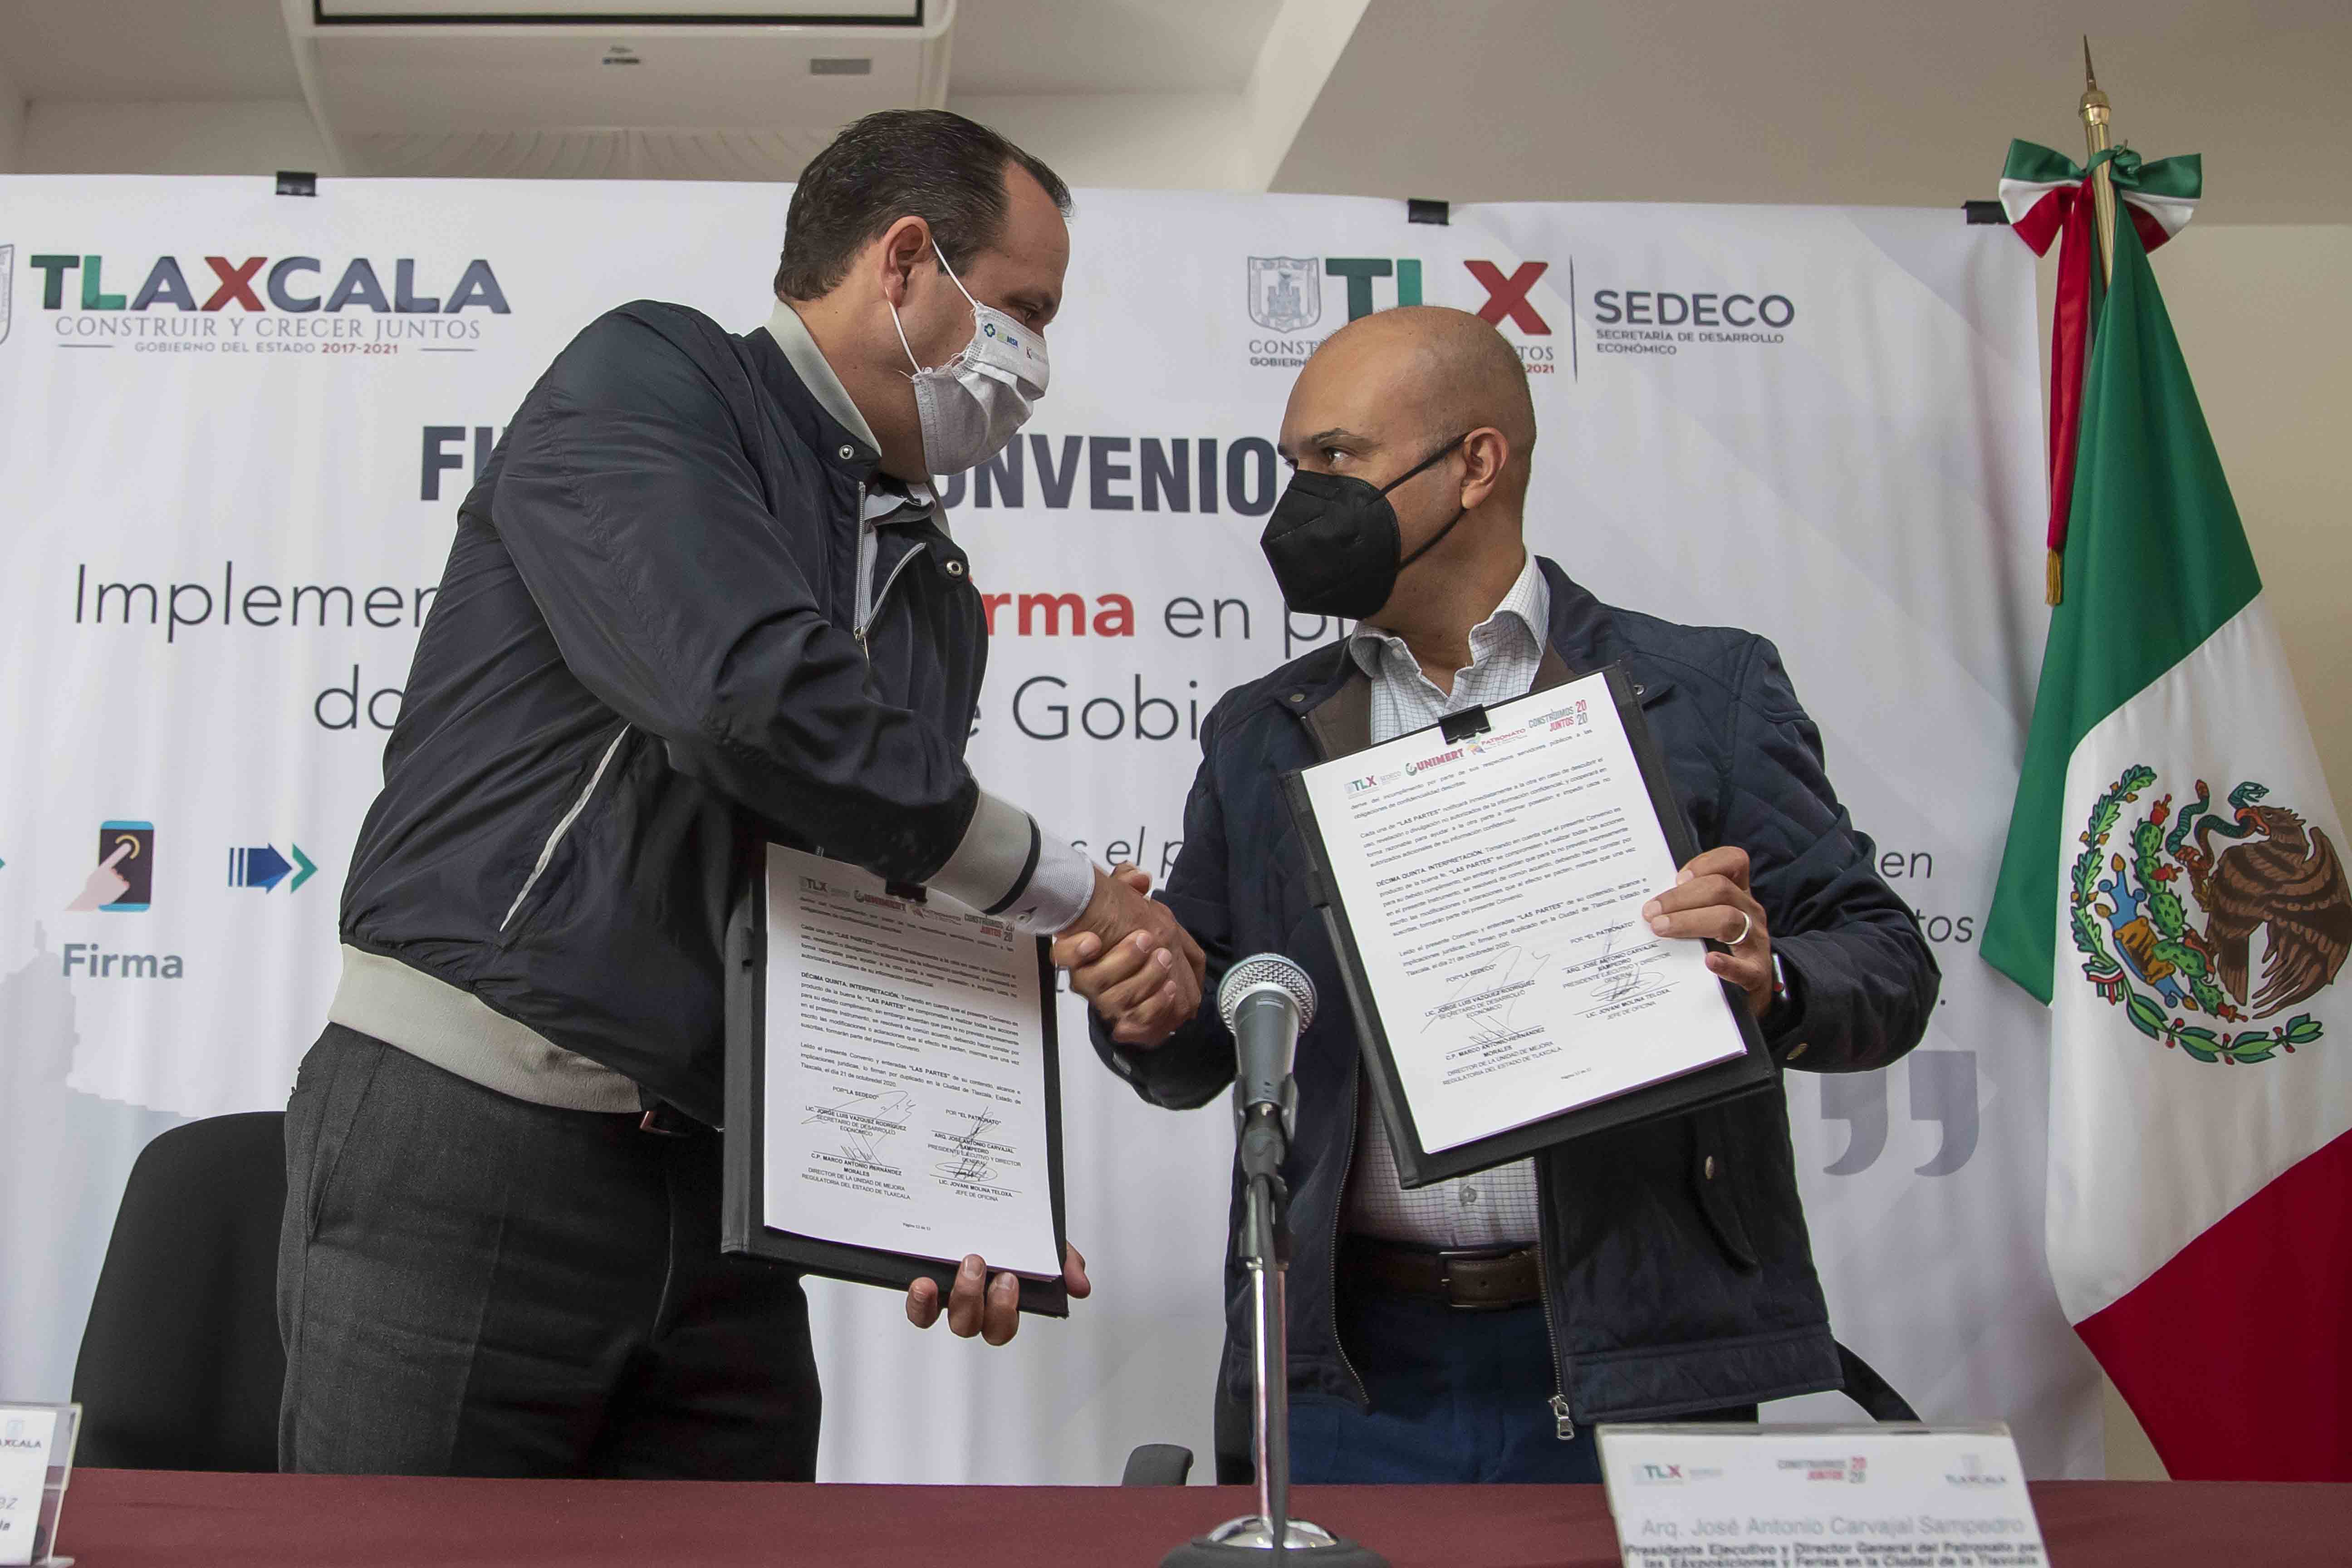 Signan Sedeco y Patronato para las exposiciones y ferias en la ciudad de Tlaxcala convenio para uso de firma electrónica avanzada.